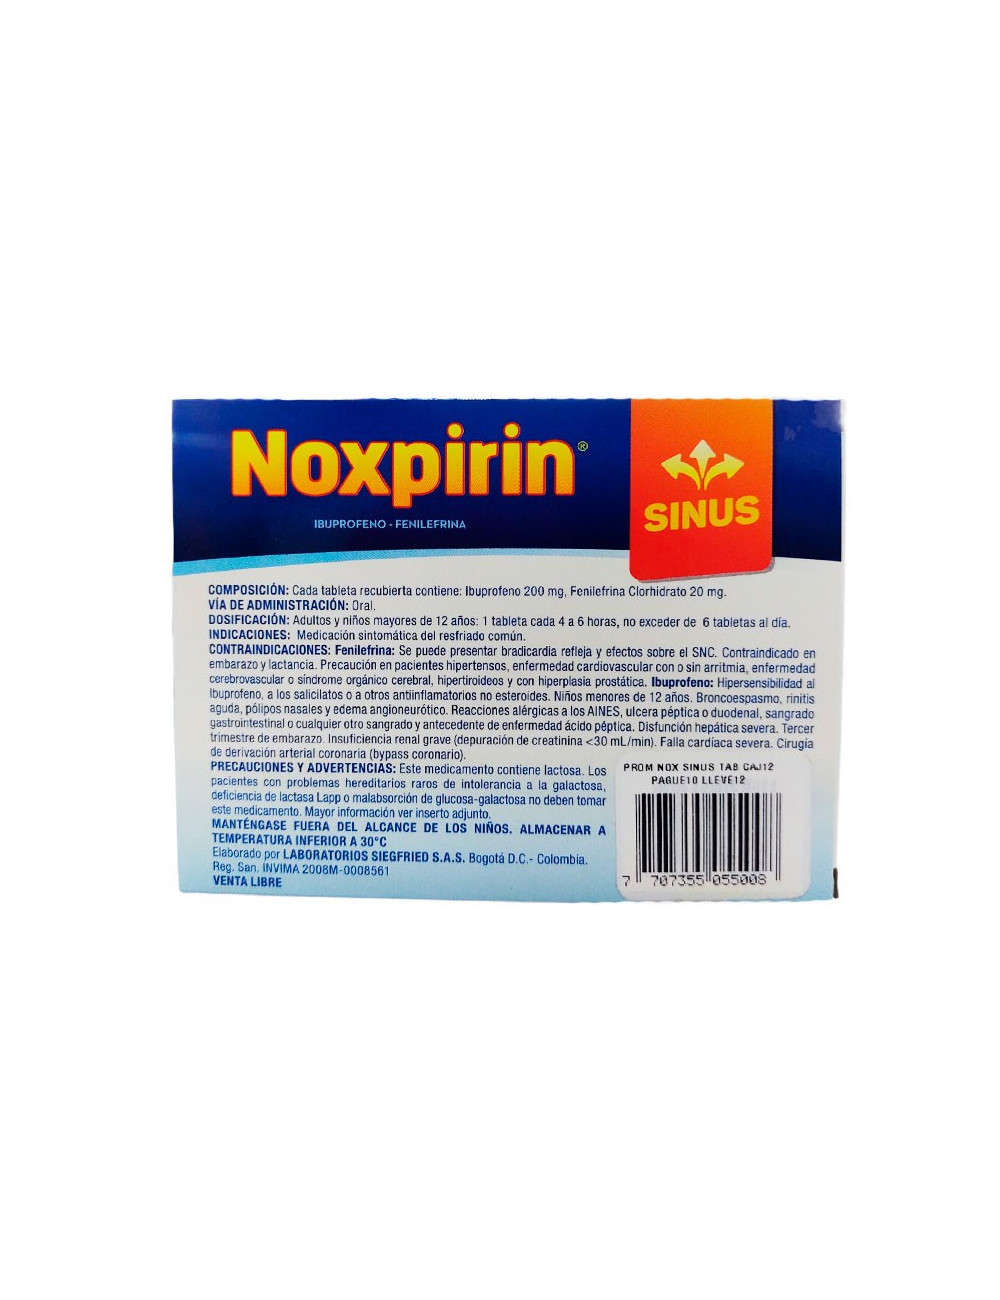 NOXPIRIN SINUS X 12 TABLETAS - DESCONGESTIONANTE NASAL